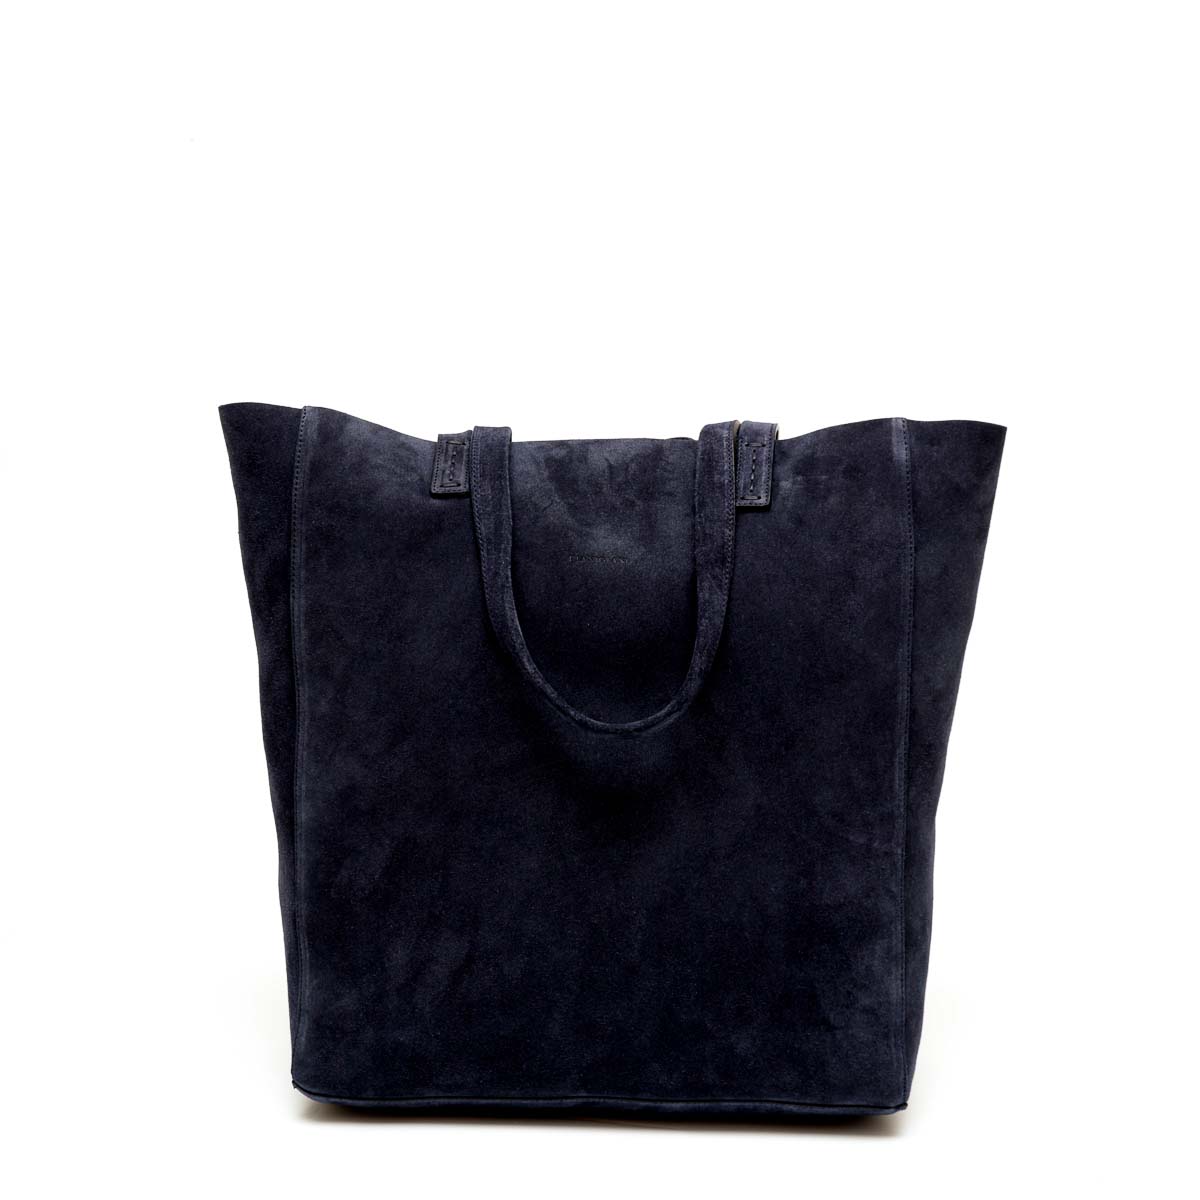 Soft, borsa da donna modello shopping in pelle scamosciata blu, realizzata e venduta da Pianigiani